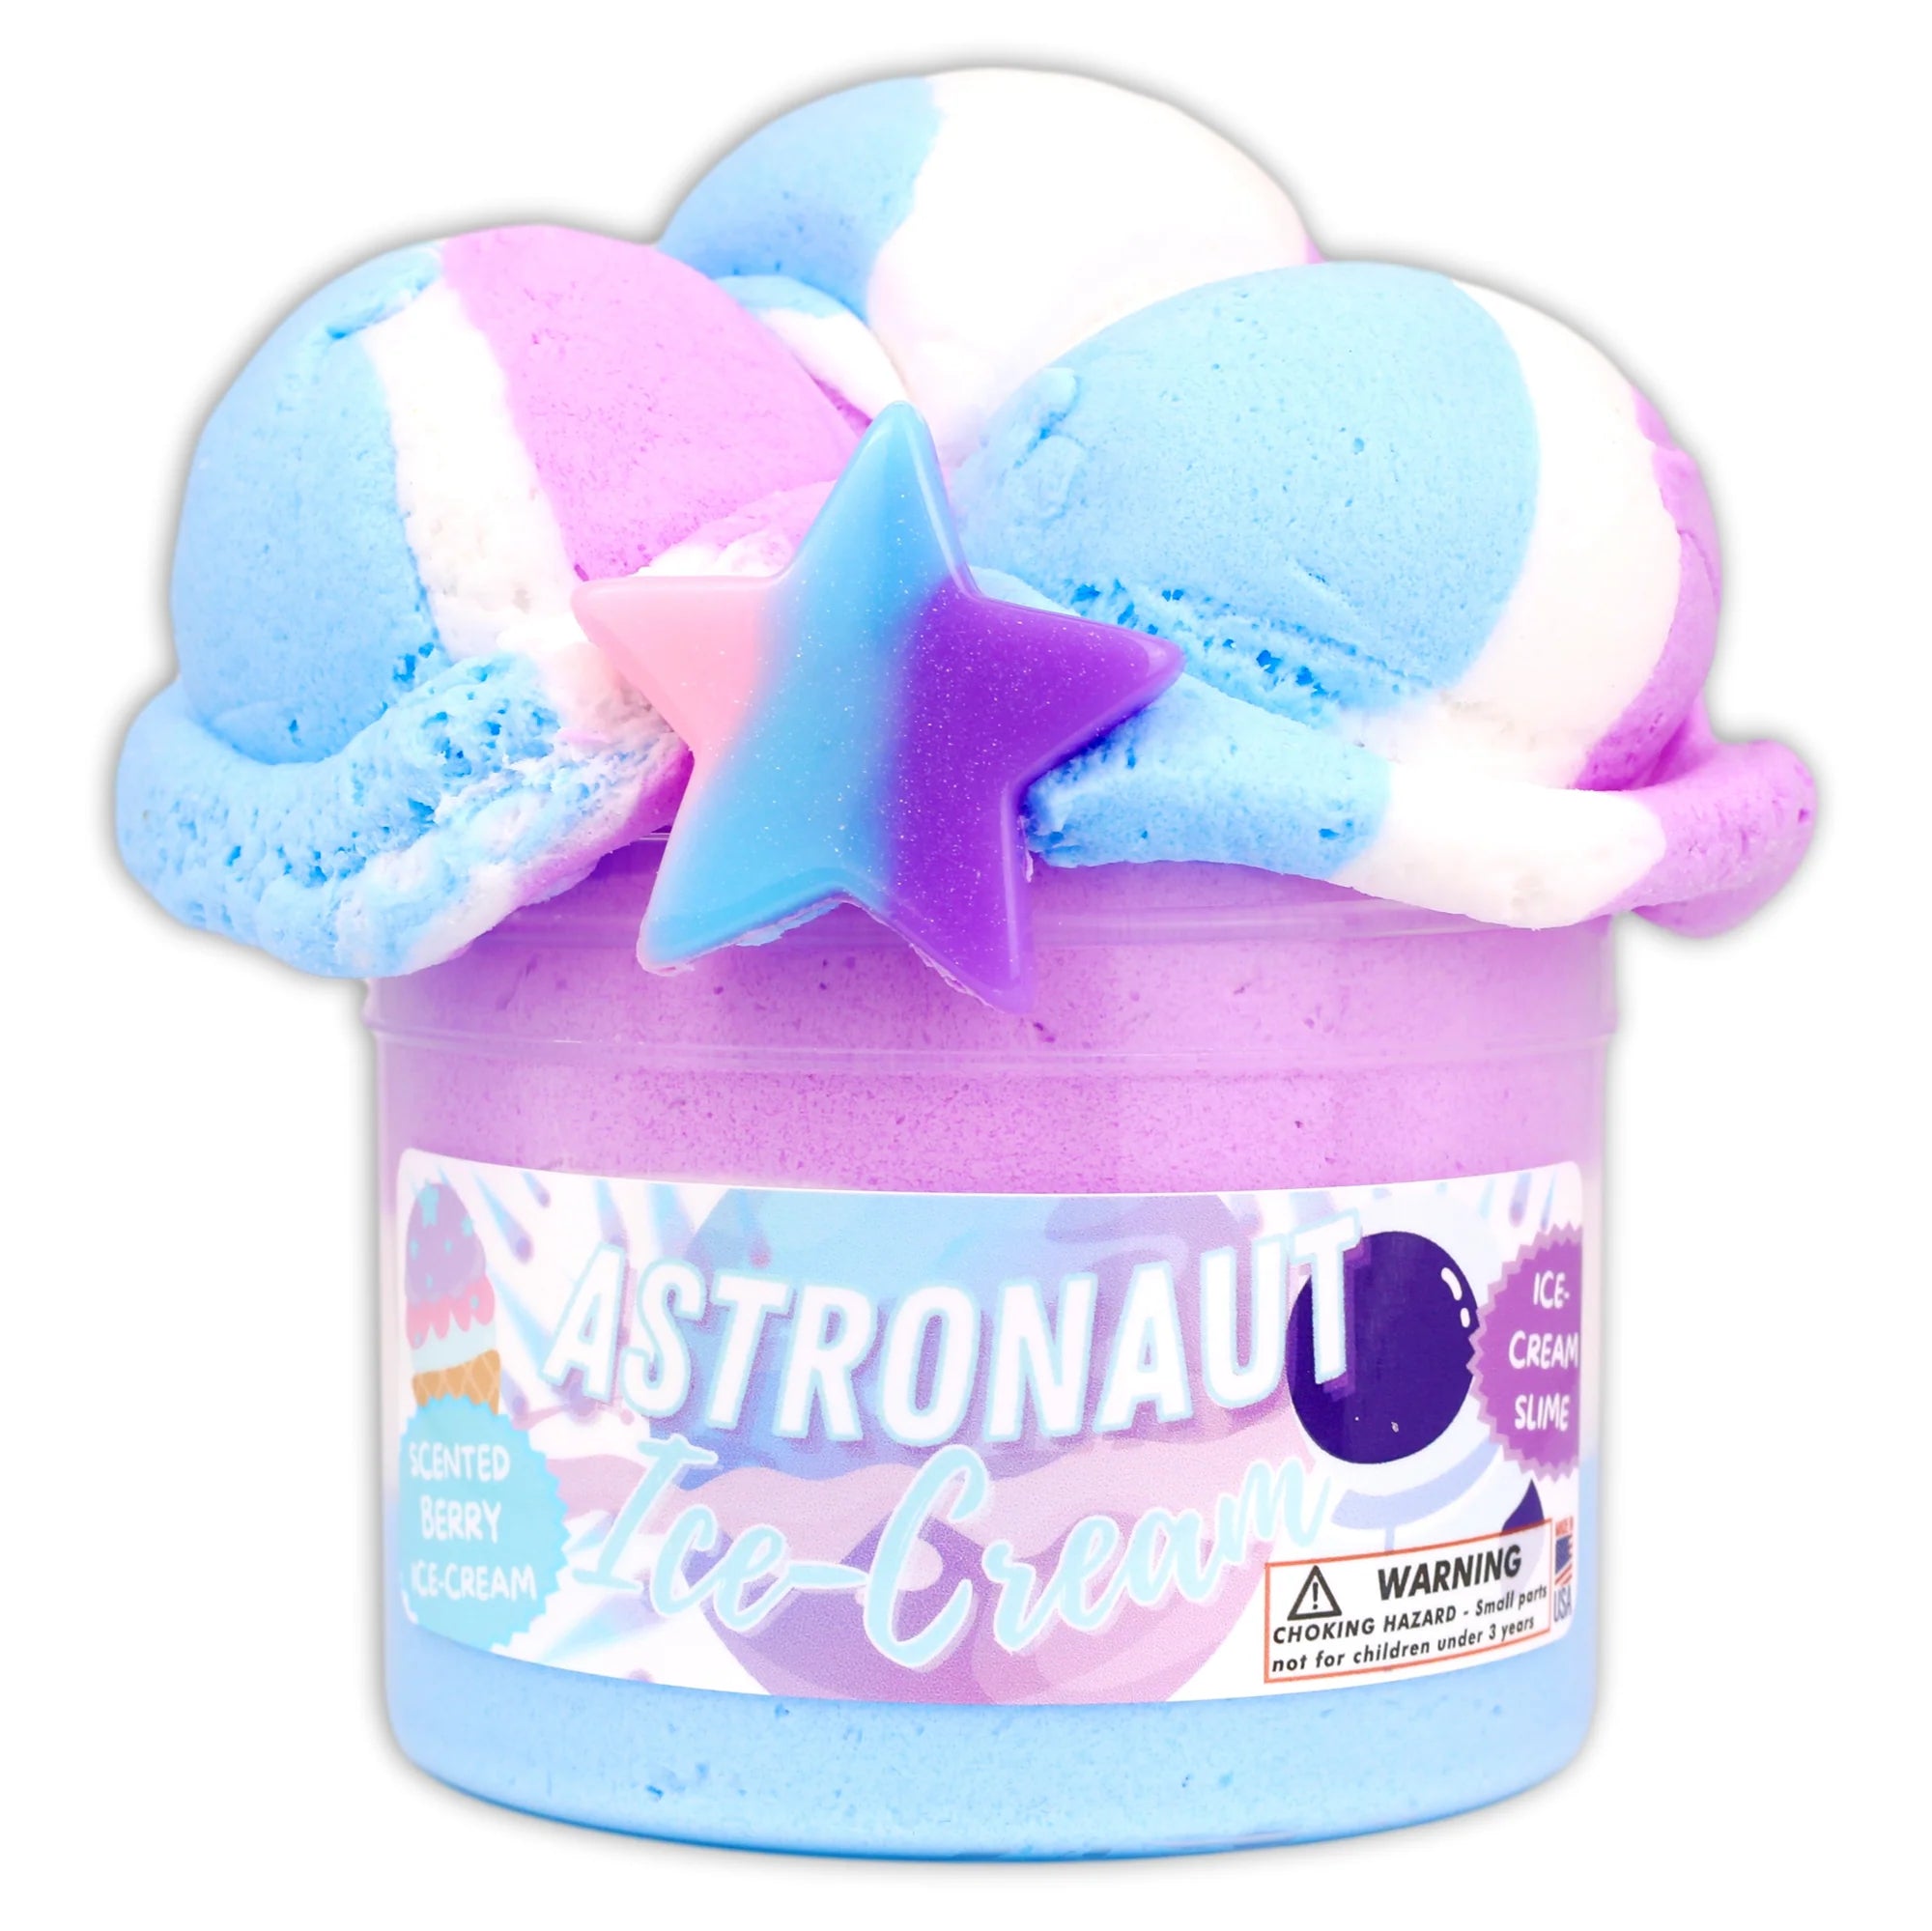 Astronaut Ice Cream Slime